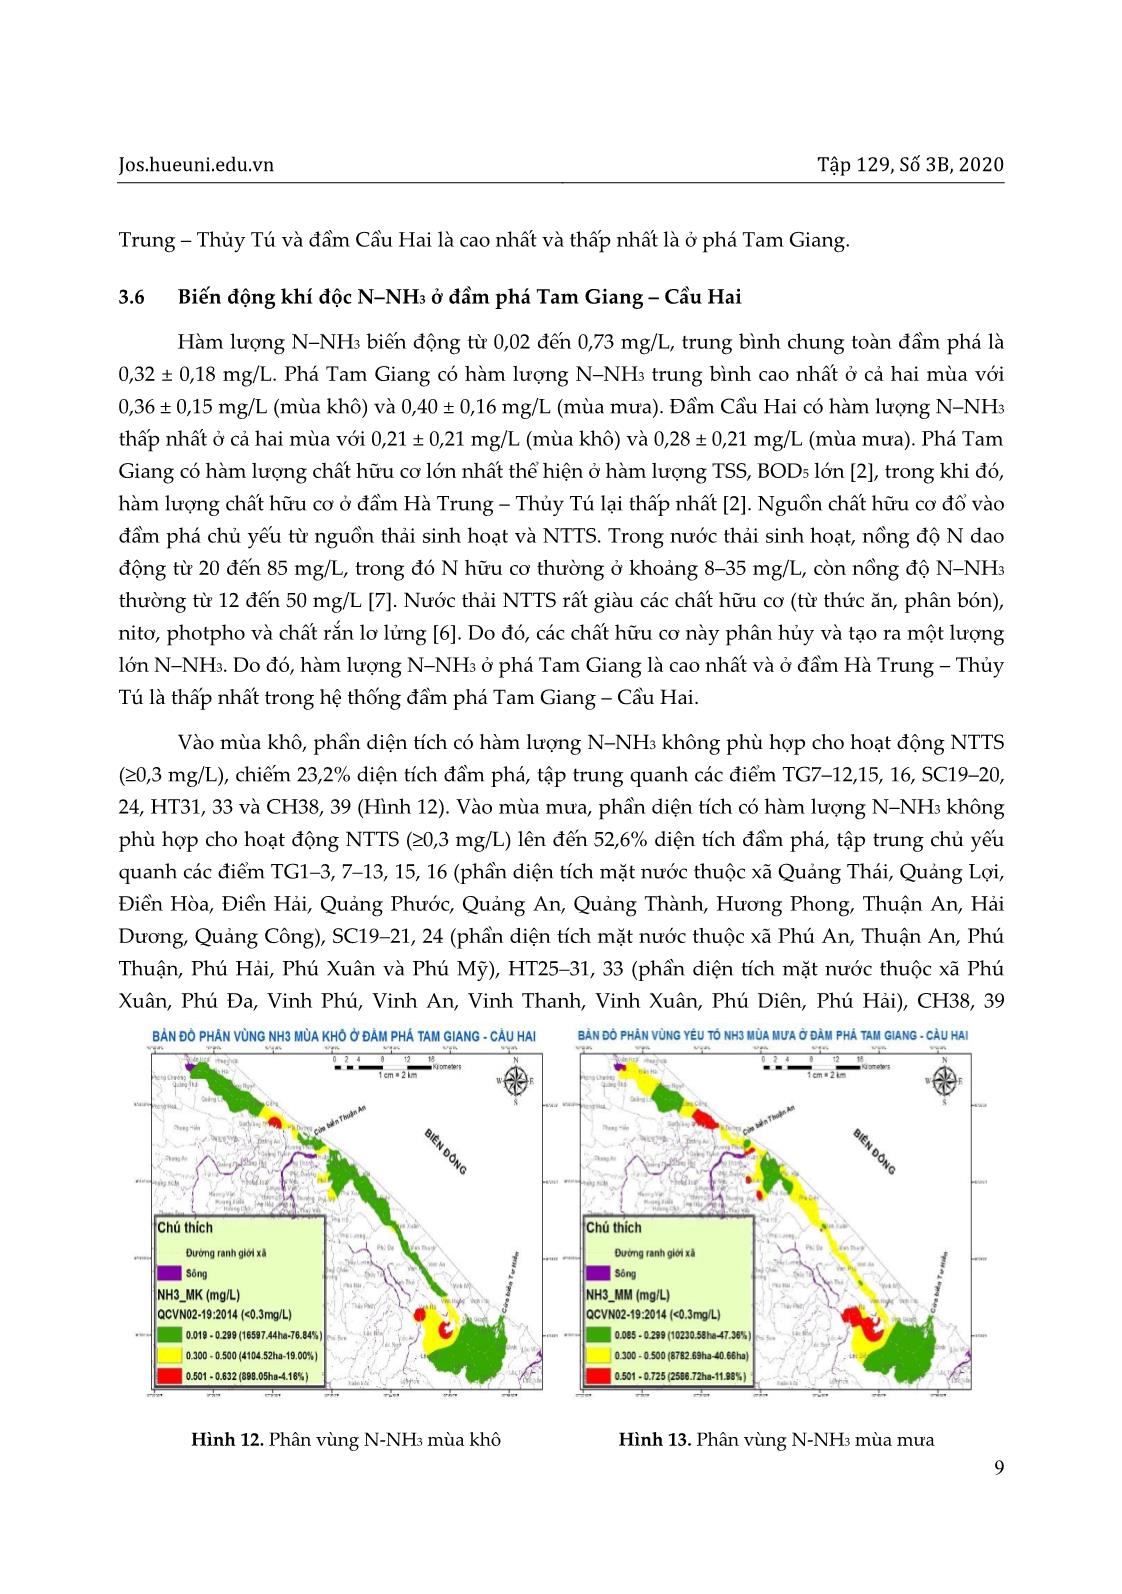 Phân vùng chất lượng nước cho nuôi tôm ở đầm phá Tam Giang – Cầu Hai, tỉnh Thừa Thiên Huế với sự hỗ trợ của GIS trang 9